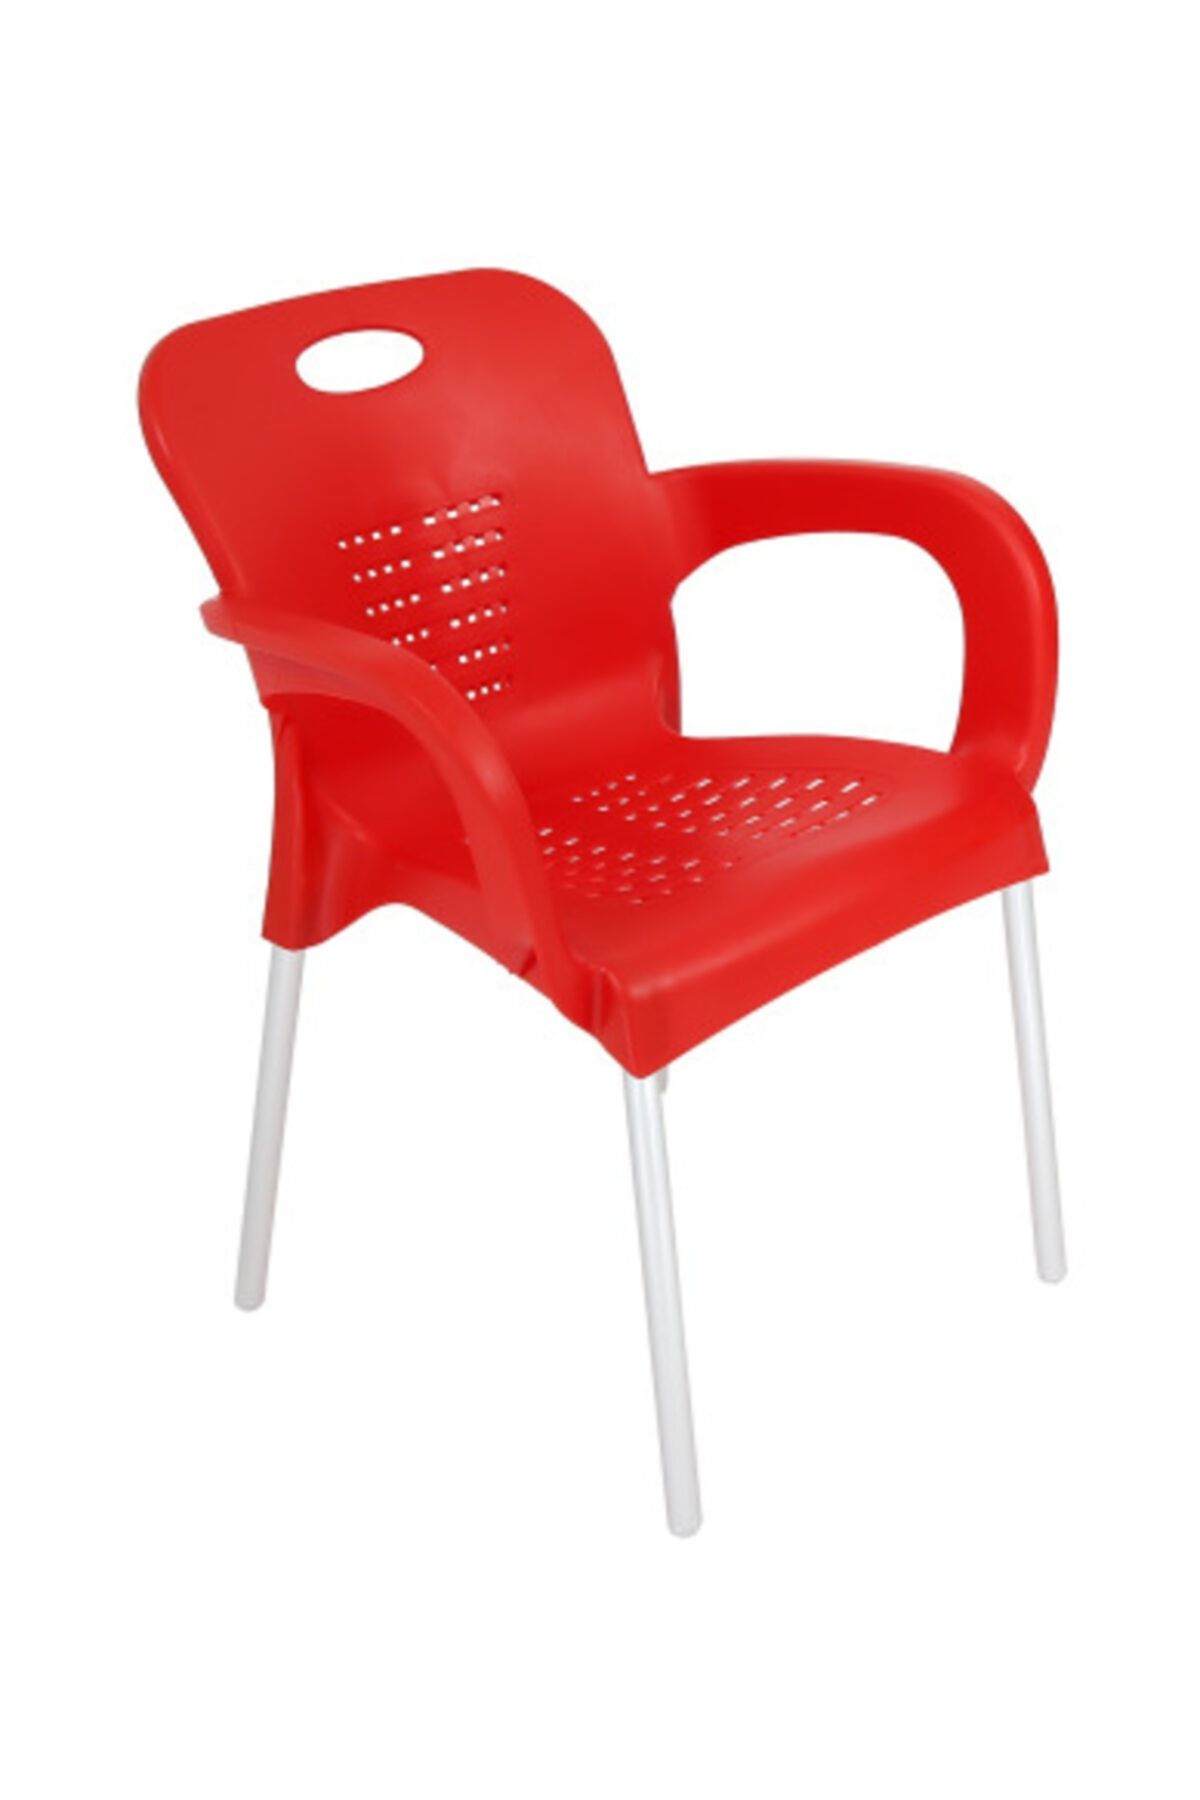 yılmaz masacılık Kırmızı  Nil Kollu Sandalye  4 Adet